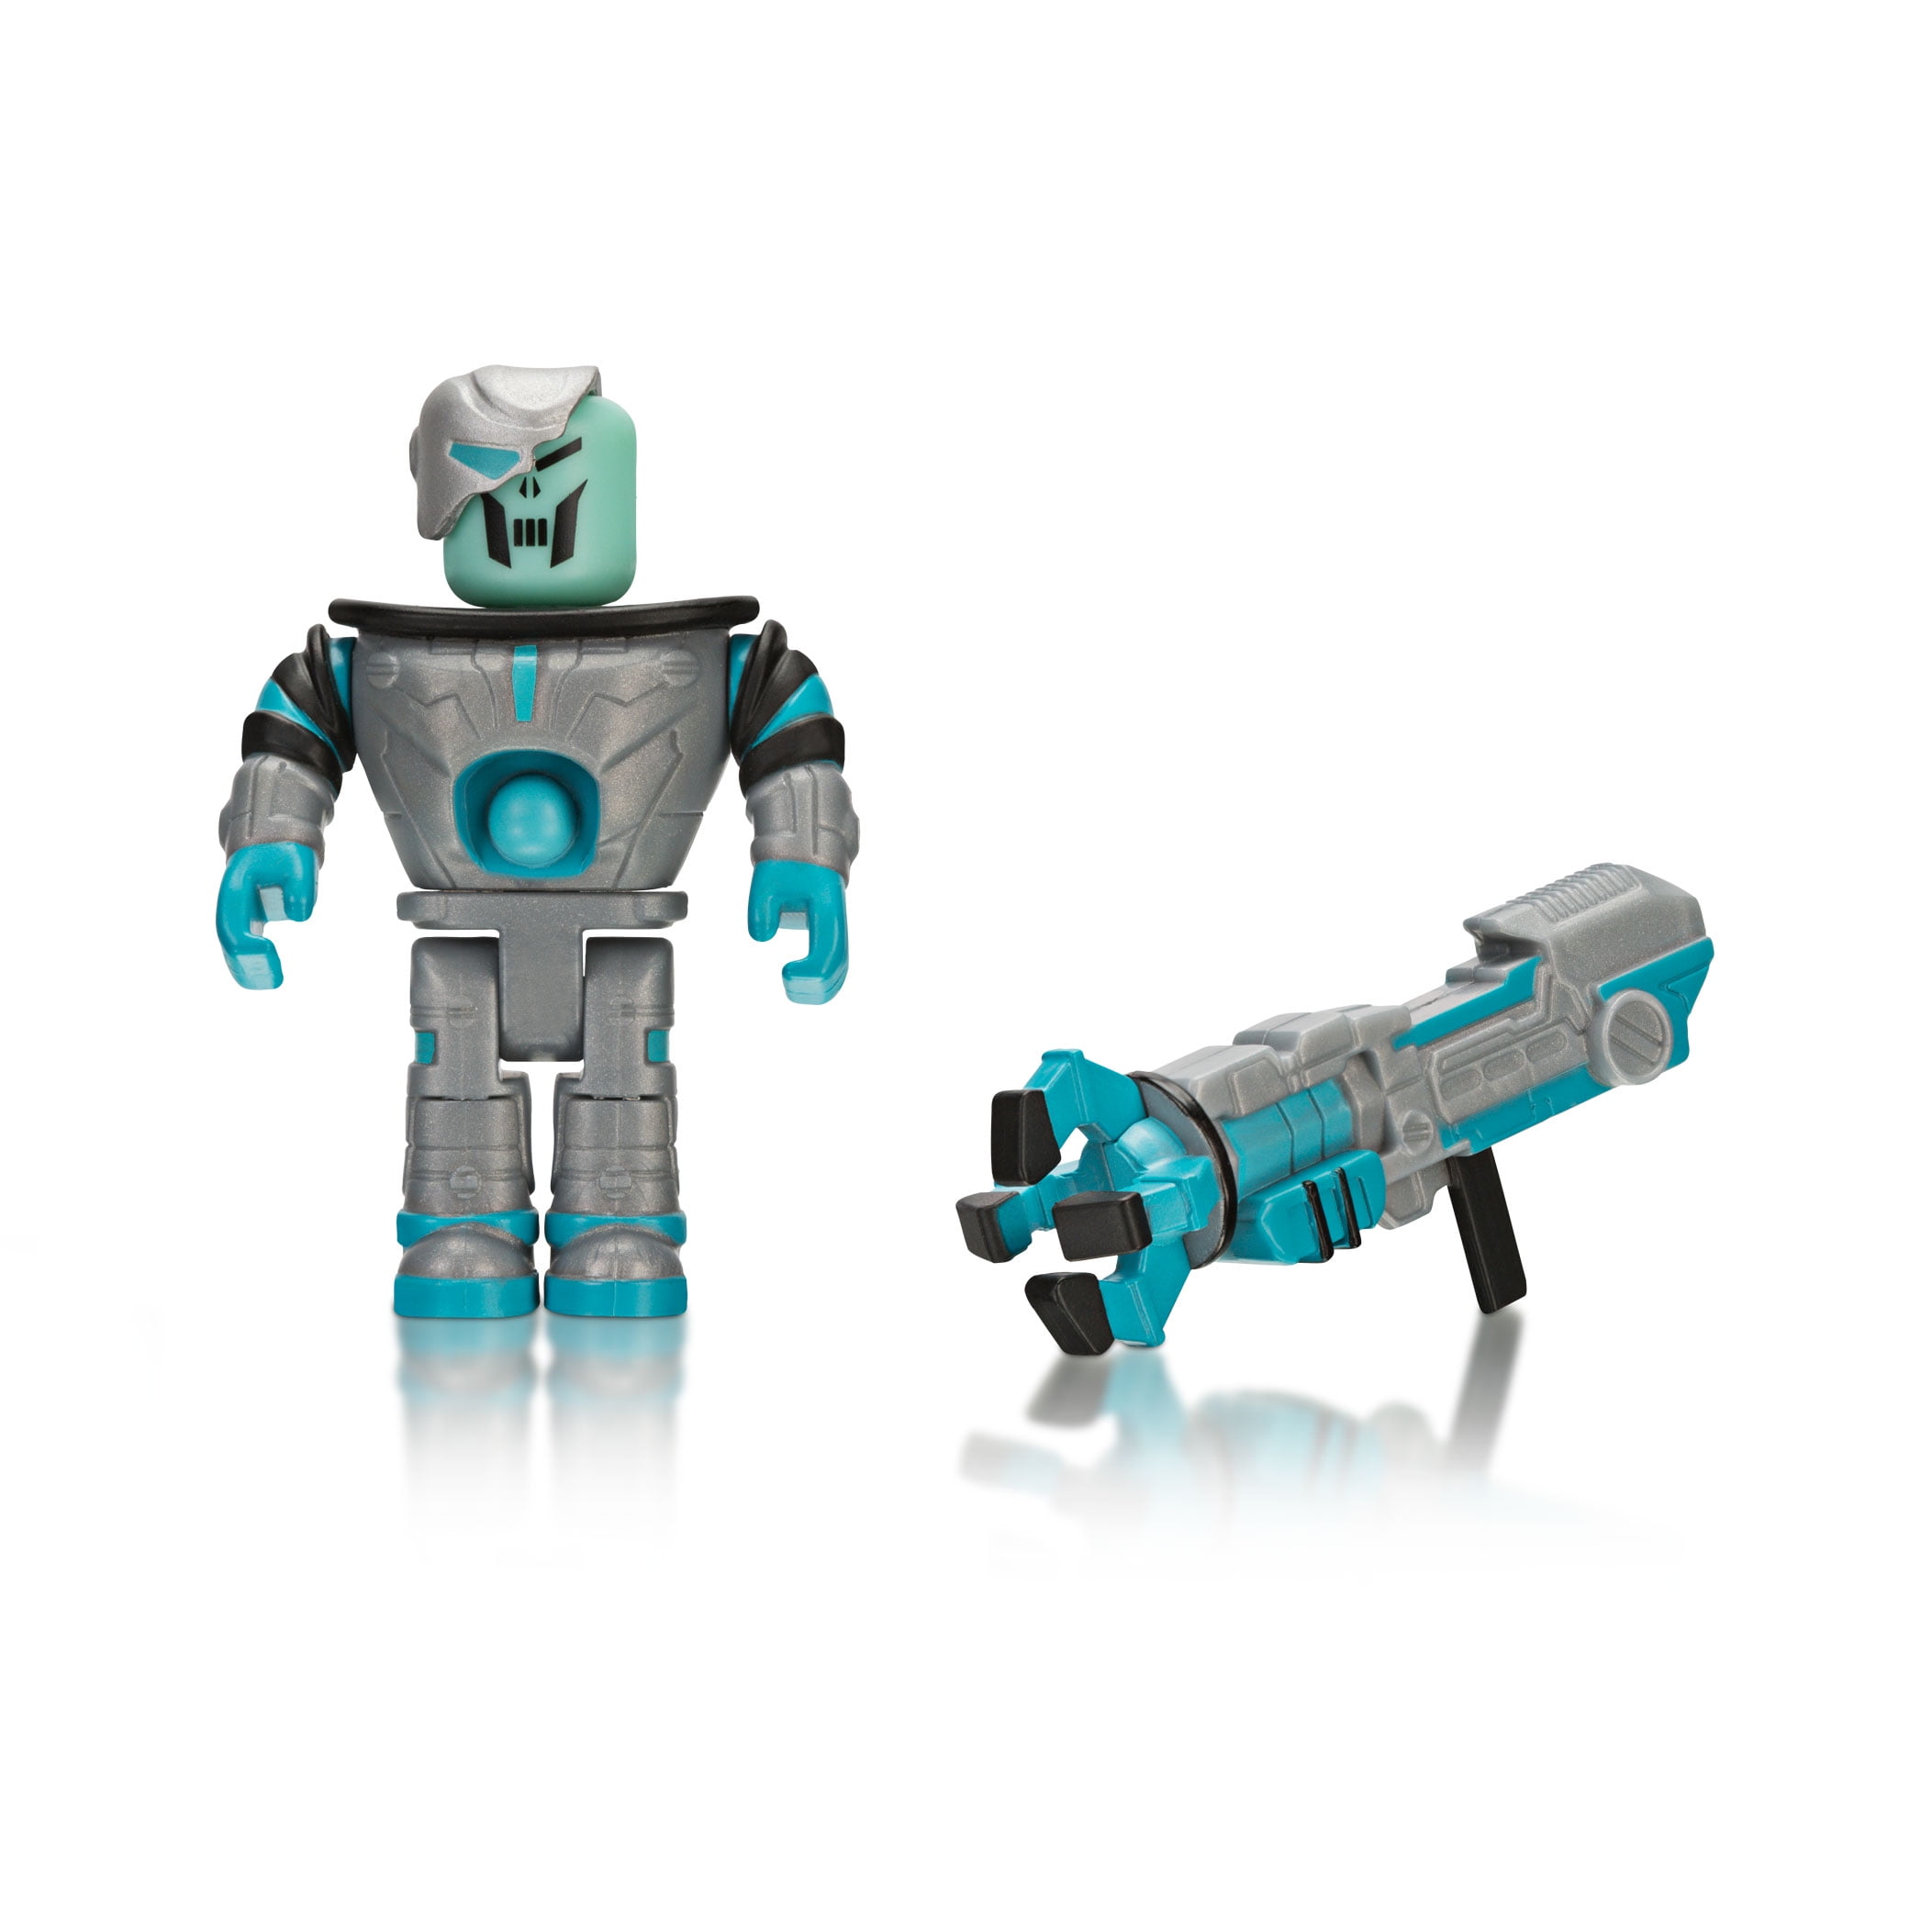 Core Action Figure Toy avec échanger code ROBLOX Bionic Bill 2019 NEUF Authentique 